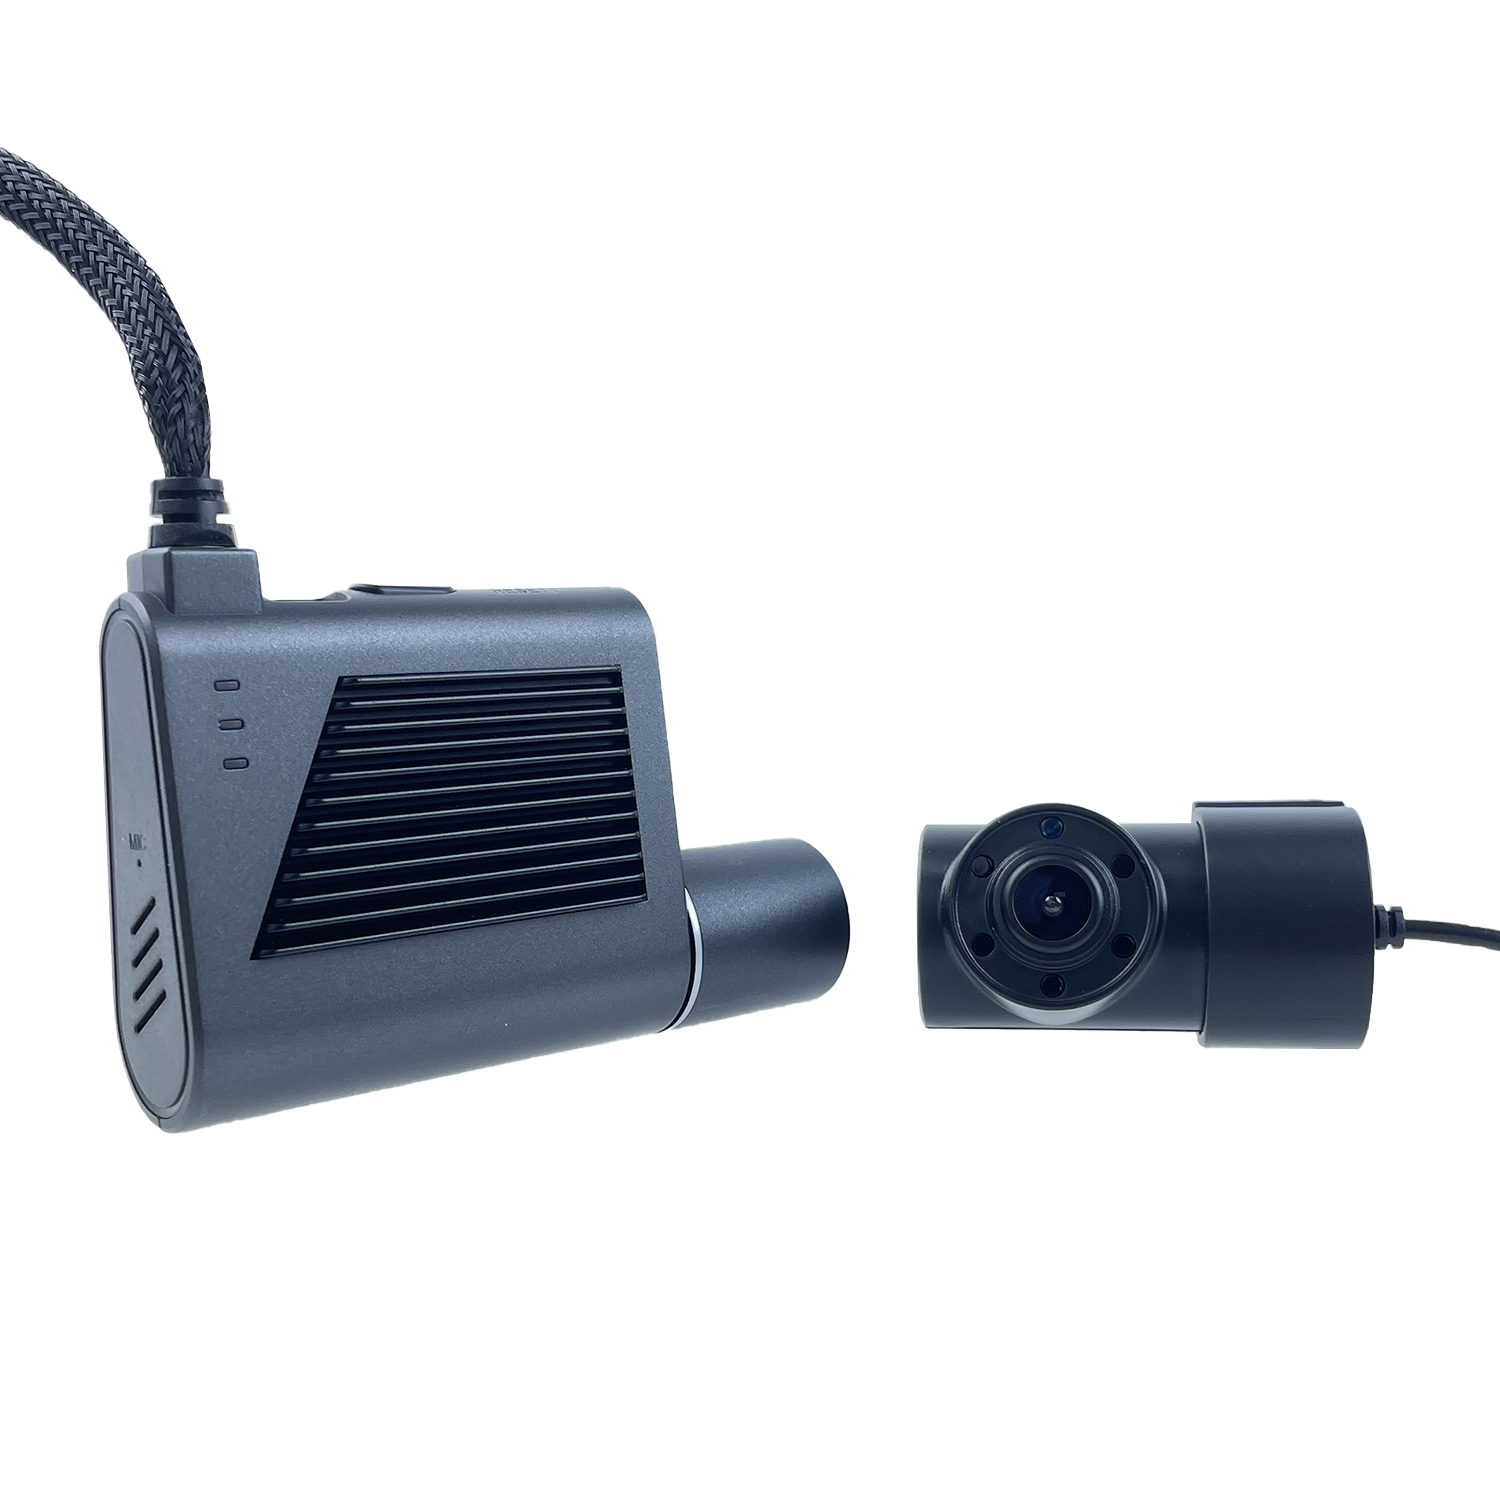 دوربین مداربسته دوربین مداربسته 4G با لنز دوگانه MCY با سیم کارت مناسب برای پلتفرم CMSV6 DMS اختیاری